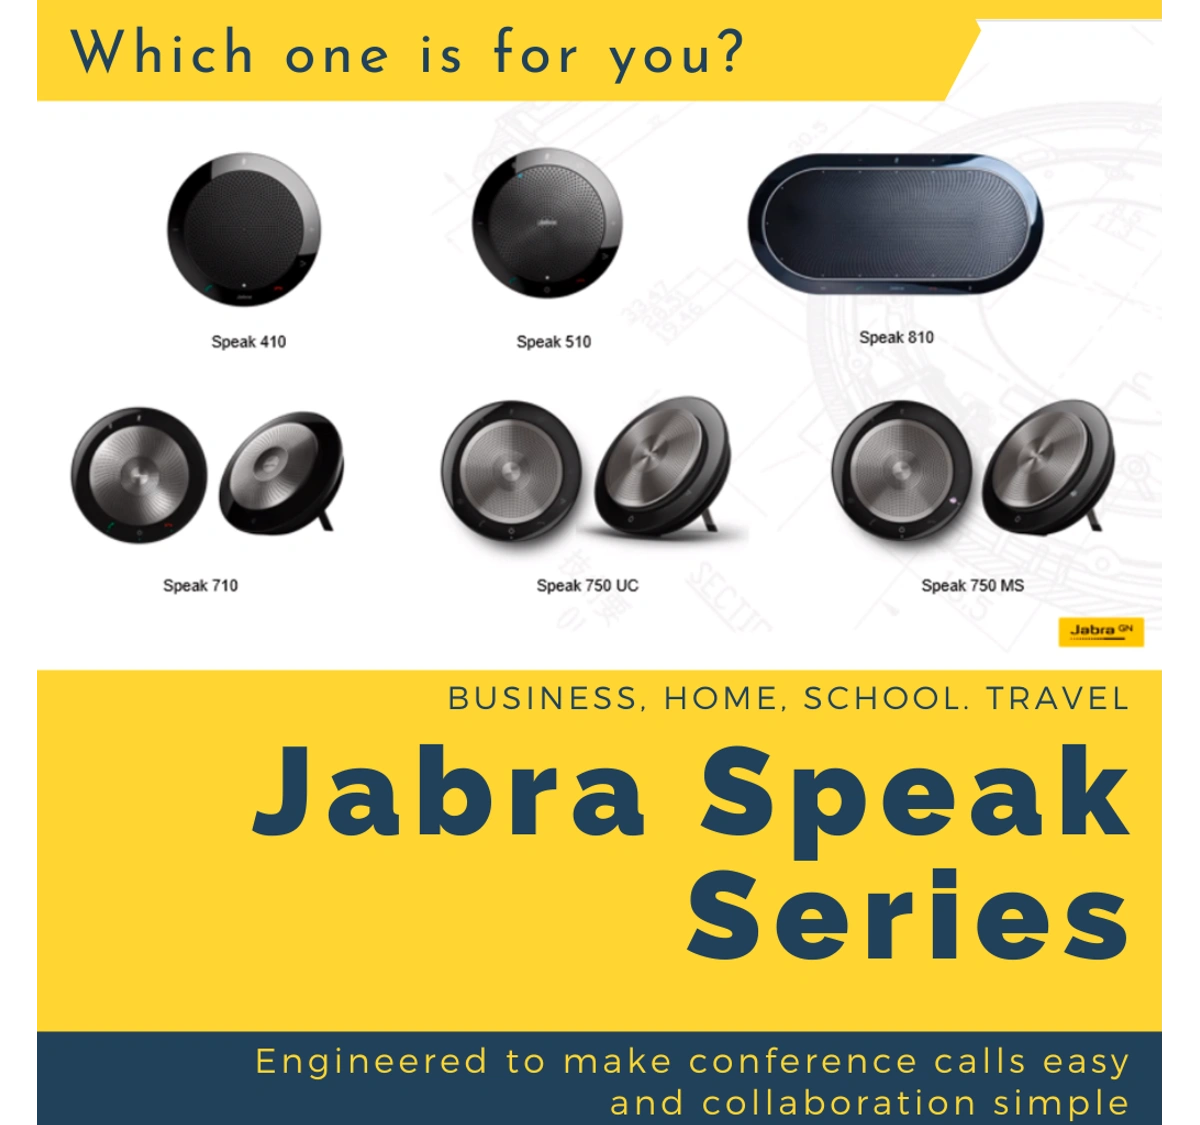 Jabra Speak 710: Great for Conference Calls and Desktop Speaker